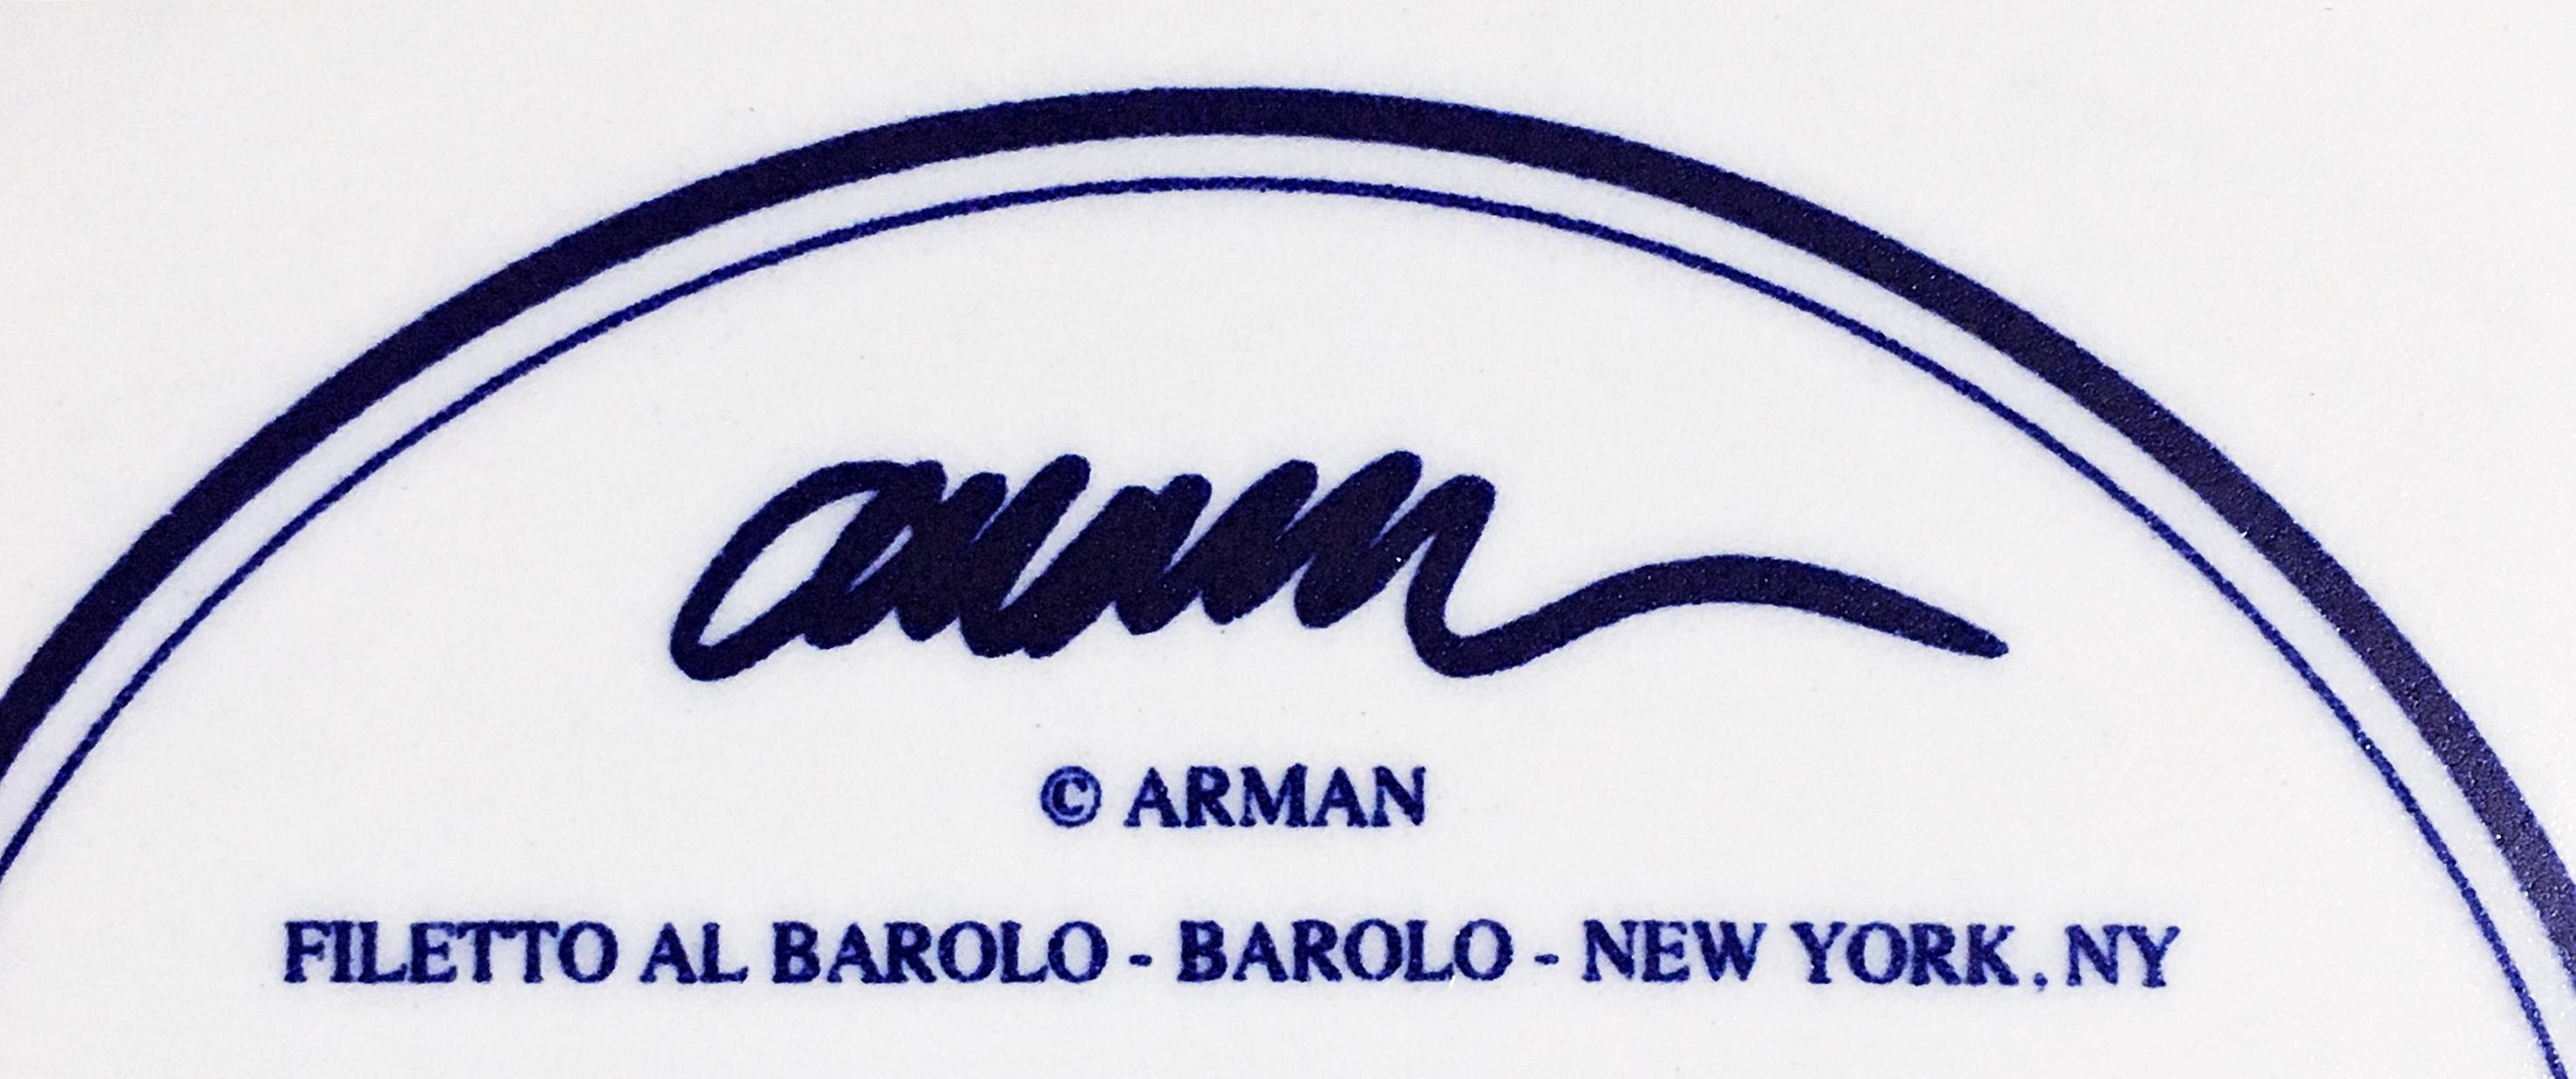 Filetto Al Barolo - Barolo - New York, NY - Abstract Mixed Media Art by Arman